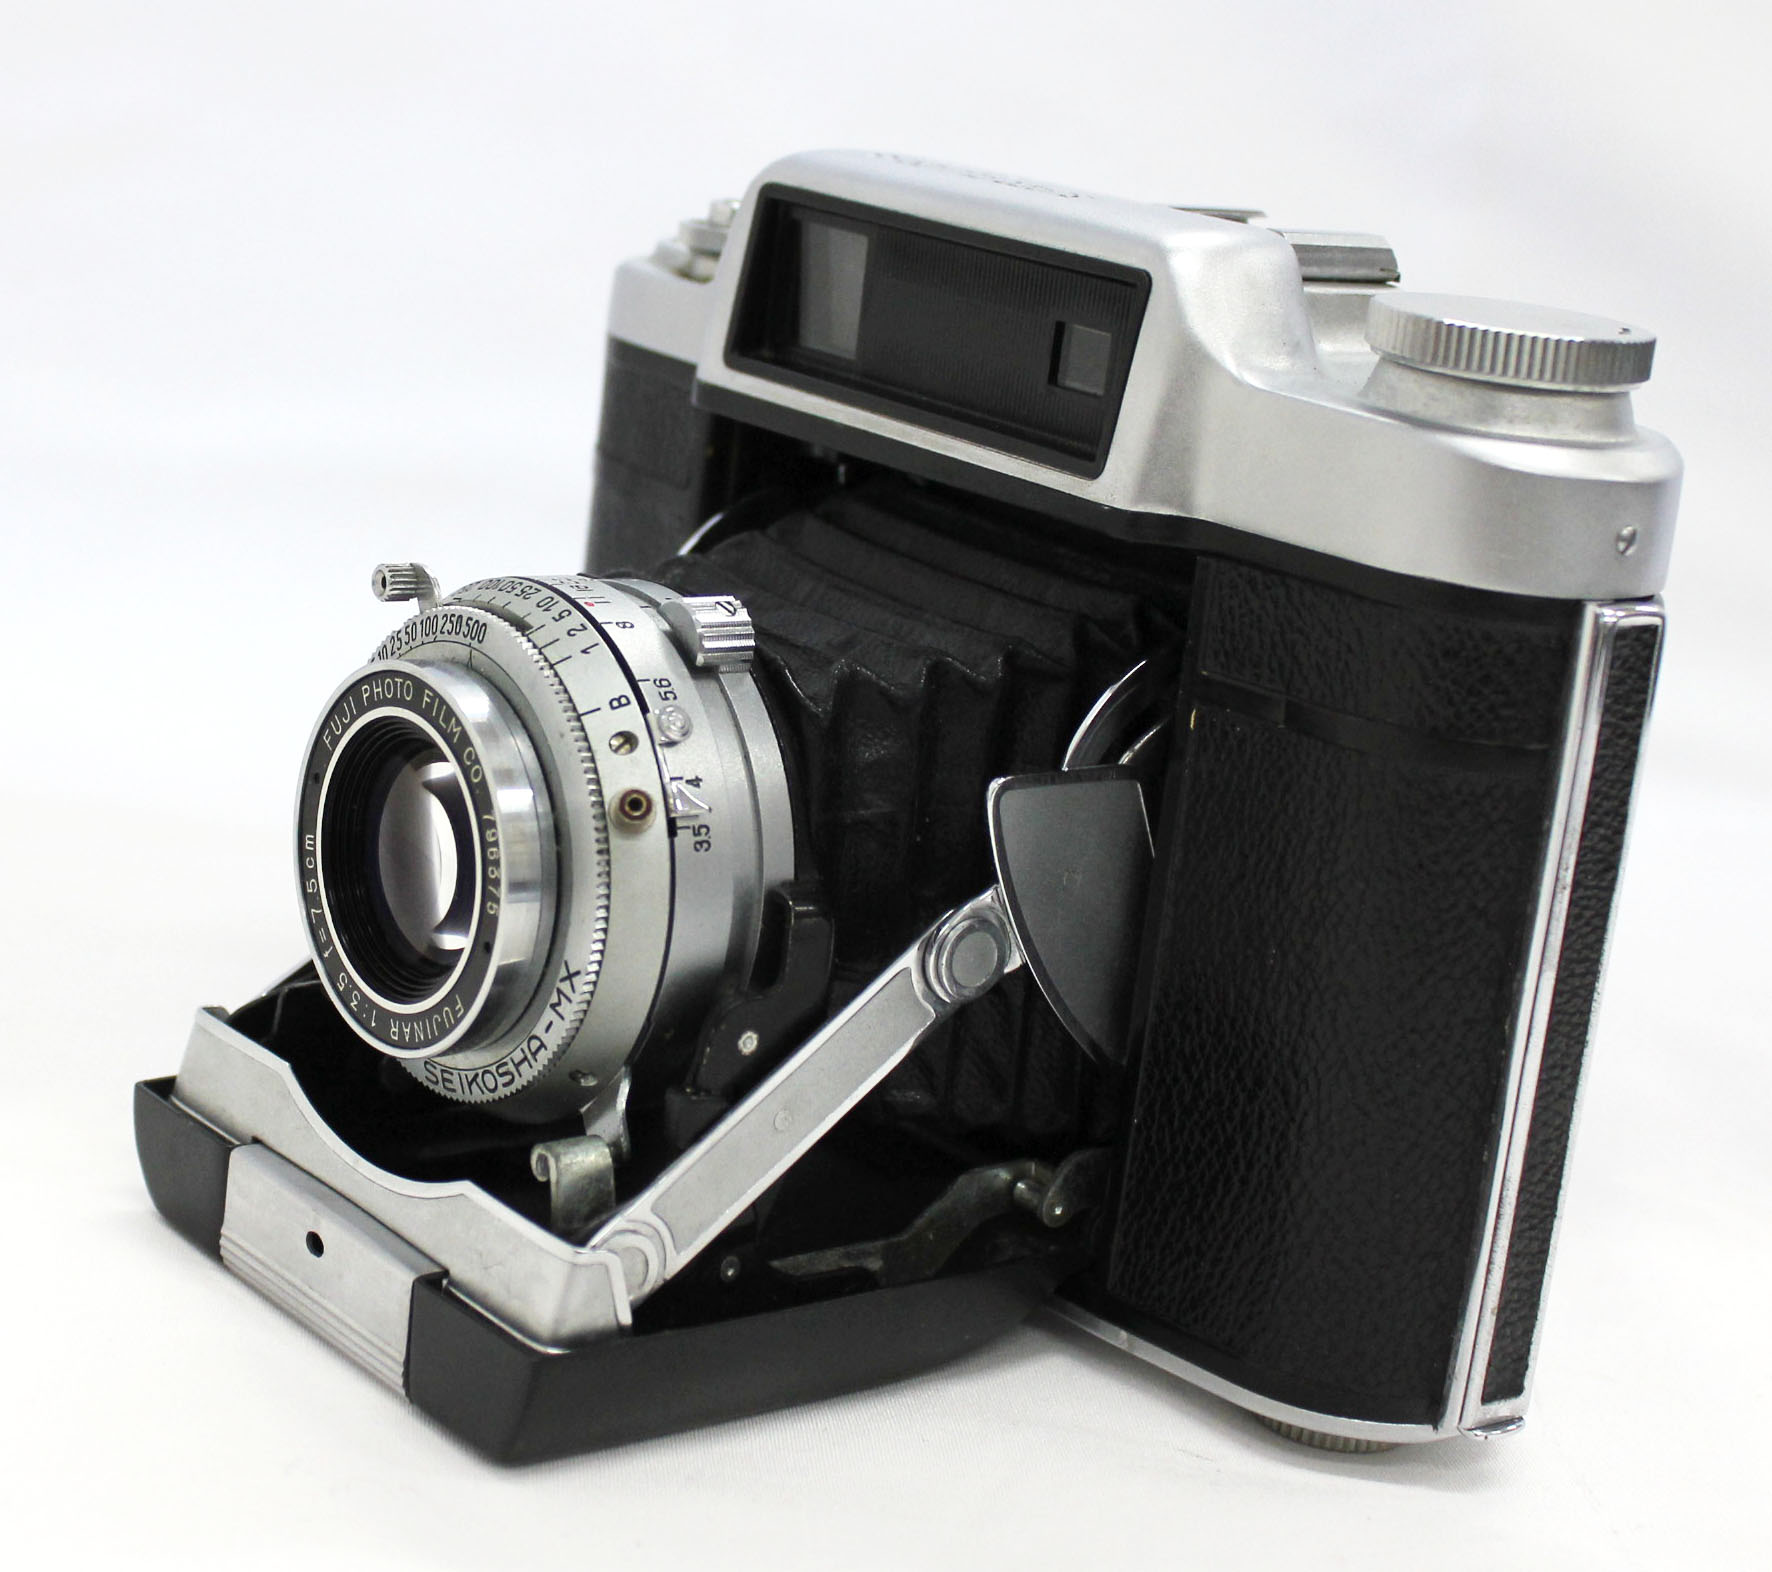  Fuji Super Fujica-6 Six 6x6 Medium Format Film Camera with Fujinar 75mm F/3.5 from Japan Photo 1